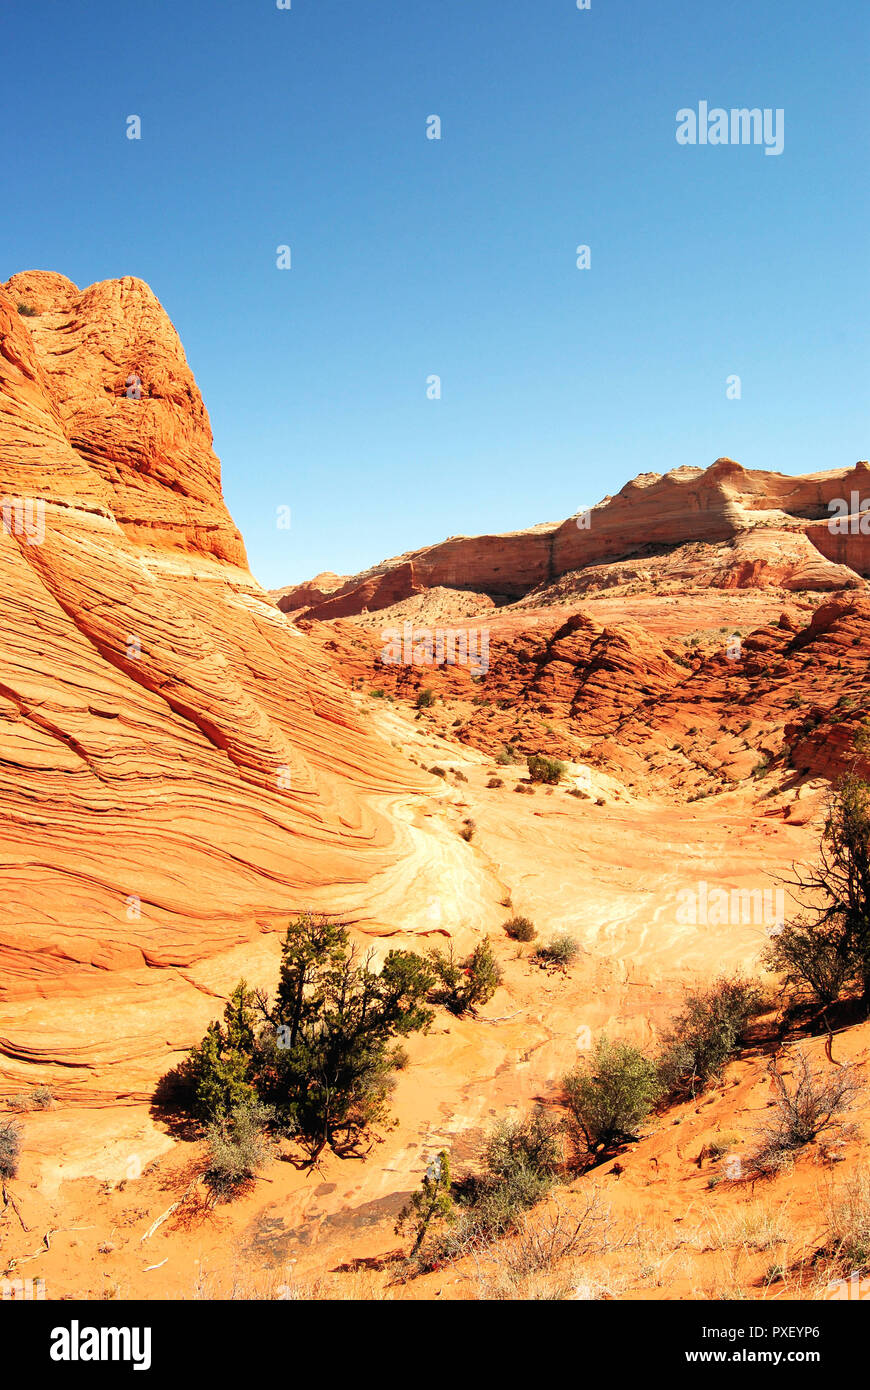 Un vecchio giallo butte di rocce sedimentarie nel deserto arido, con un cielo blu chiaro, in Coyte Buttes, Vermillion Cliffs National Monument, Arizona, Stati Uniti. Foto Stock